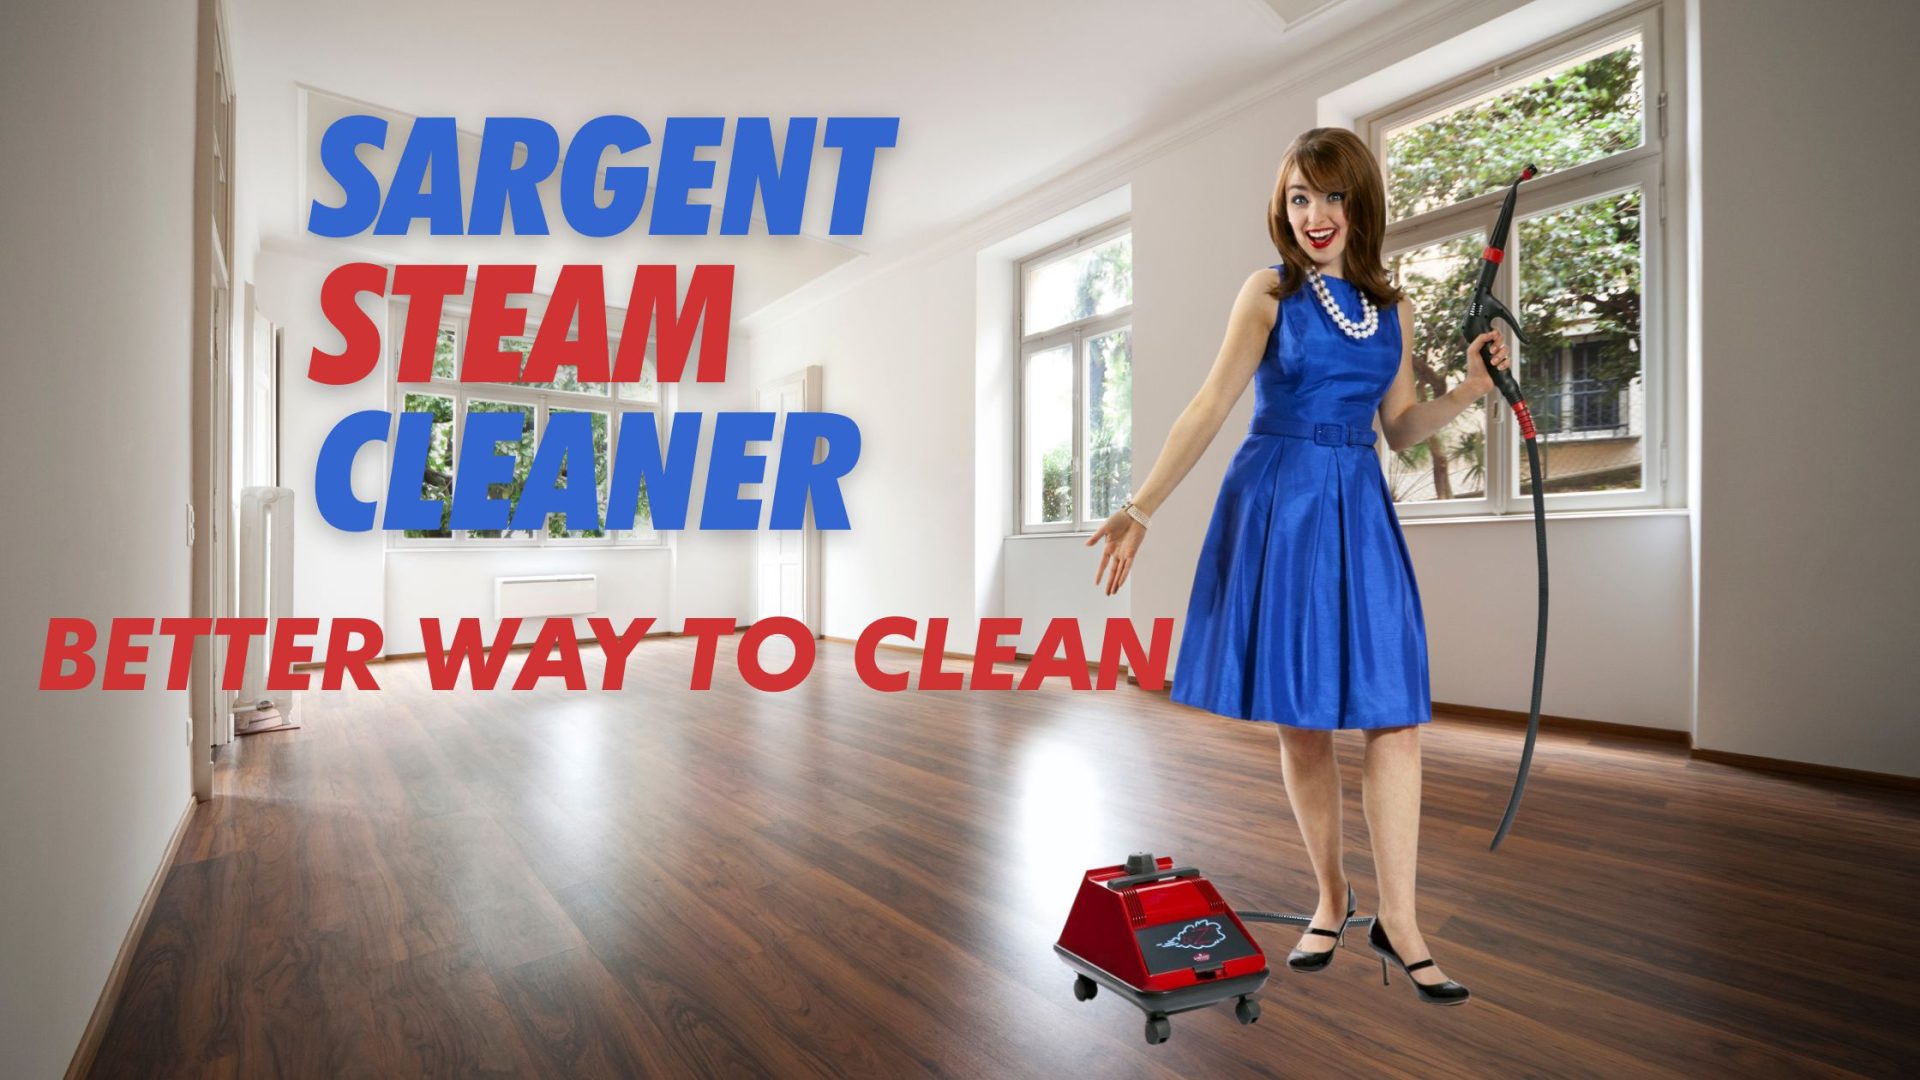 Sargent Steam Cleaner